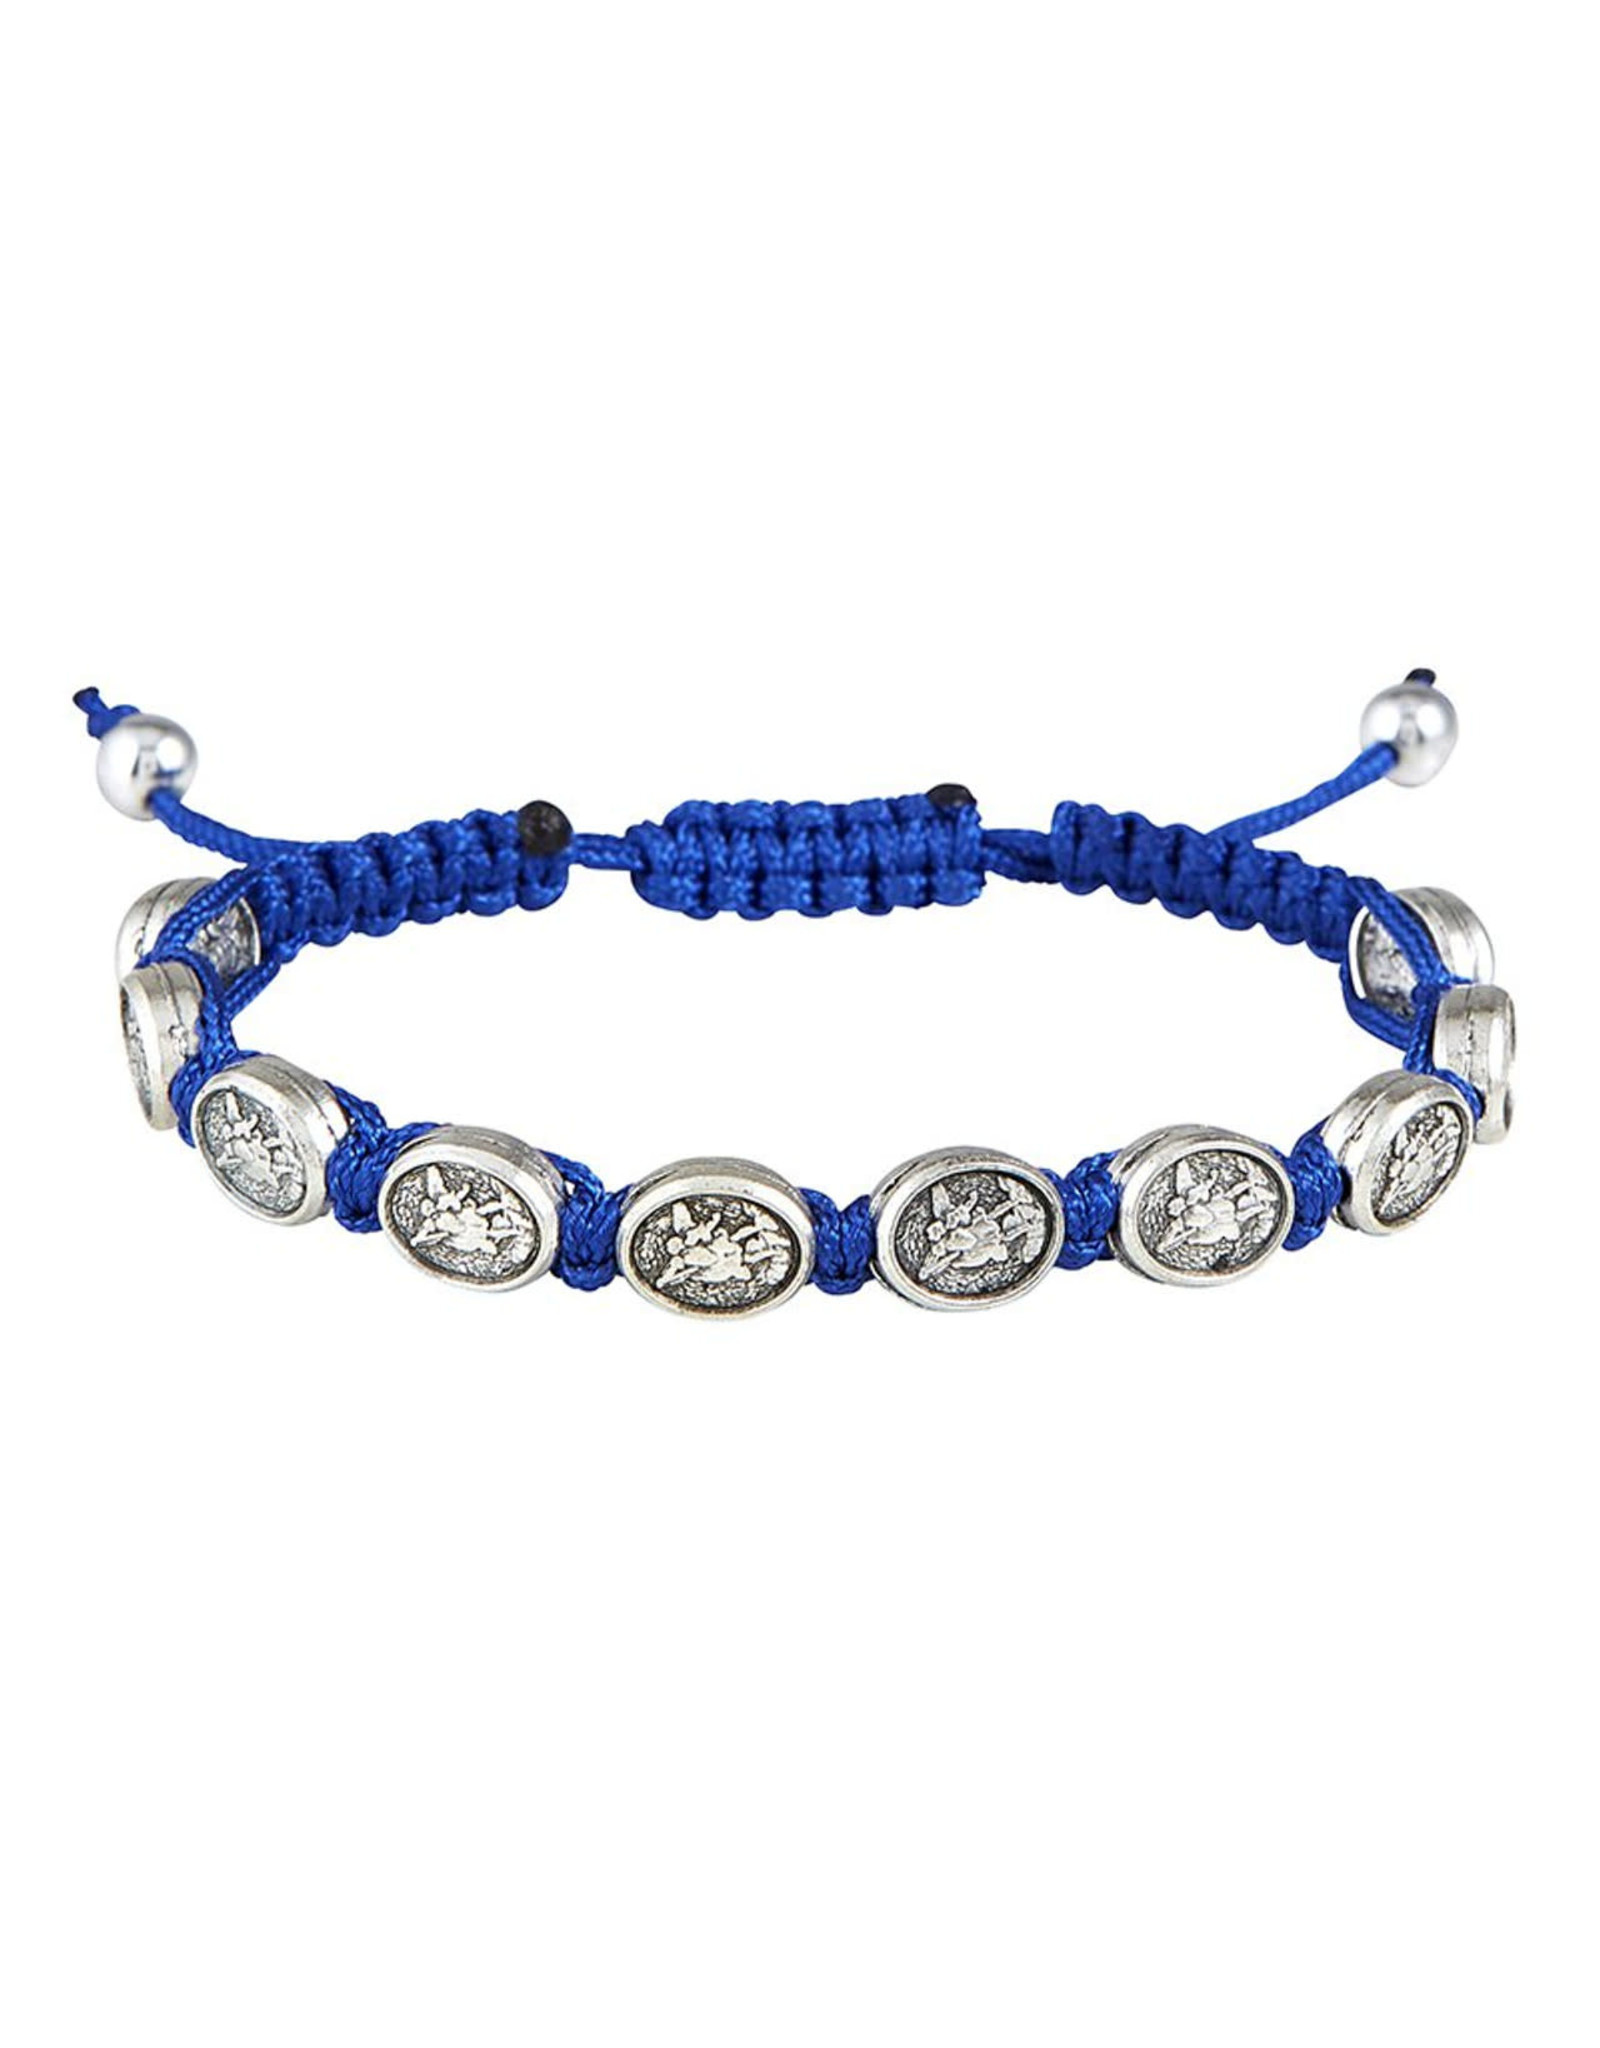 CBC - A St. Michael Medal Cord Bracelet - Blue